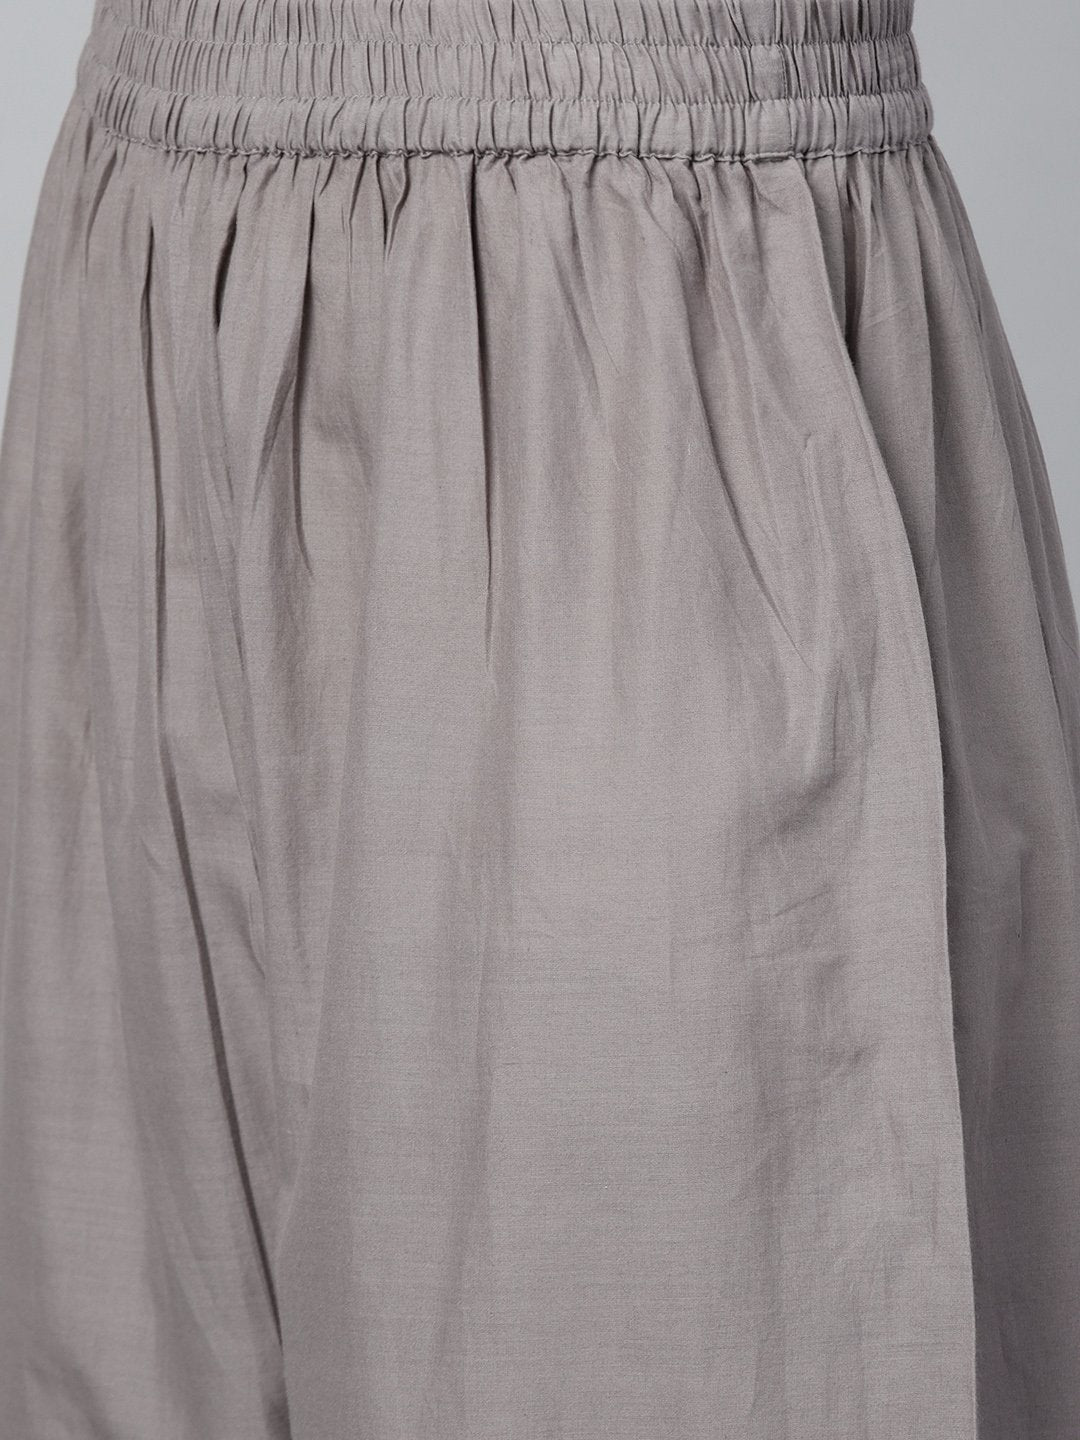 Women's Grey Three-Quarter Sleeves Flared Kurta With Palazzo Set - Nayo Clothing